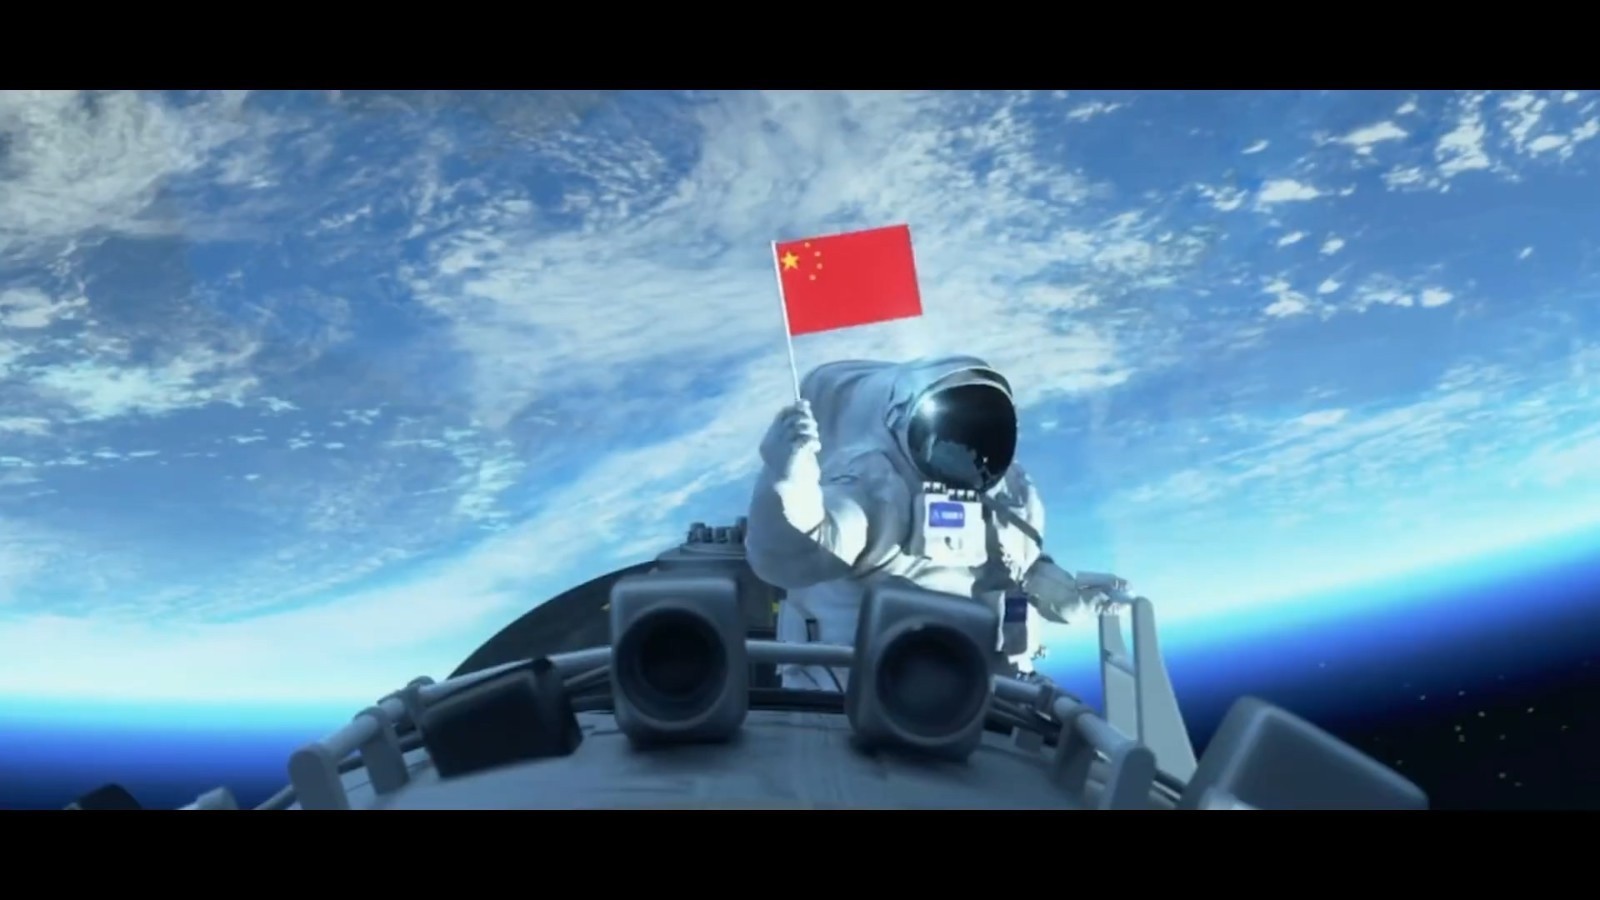 22年间,中国载人航天事业一步步攻坚克难,创新超越,矢志不渝